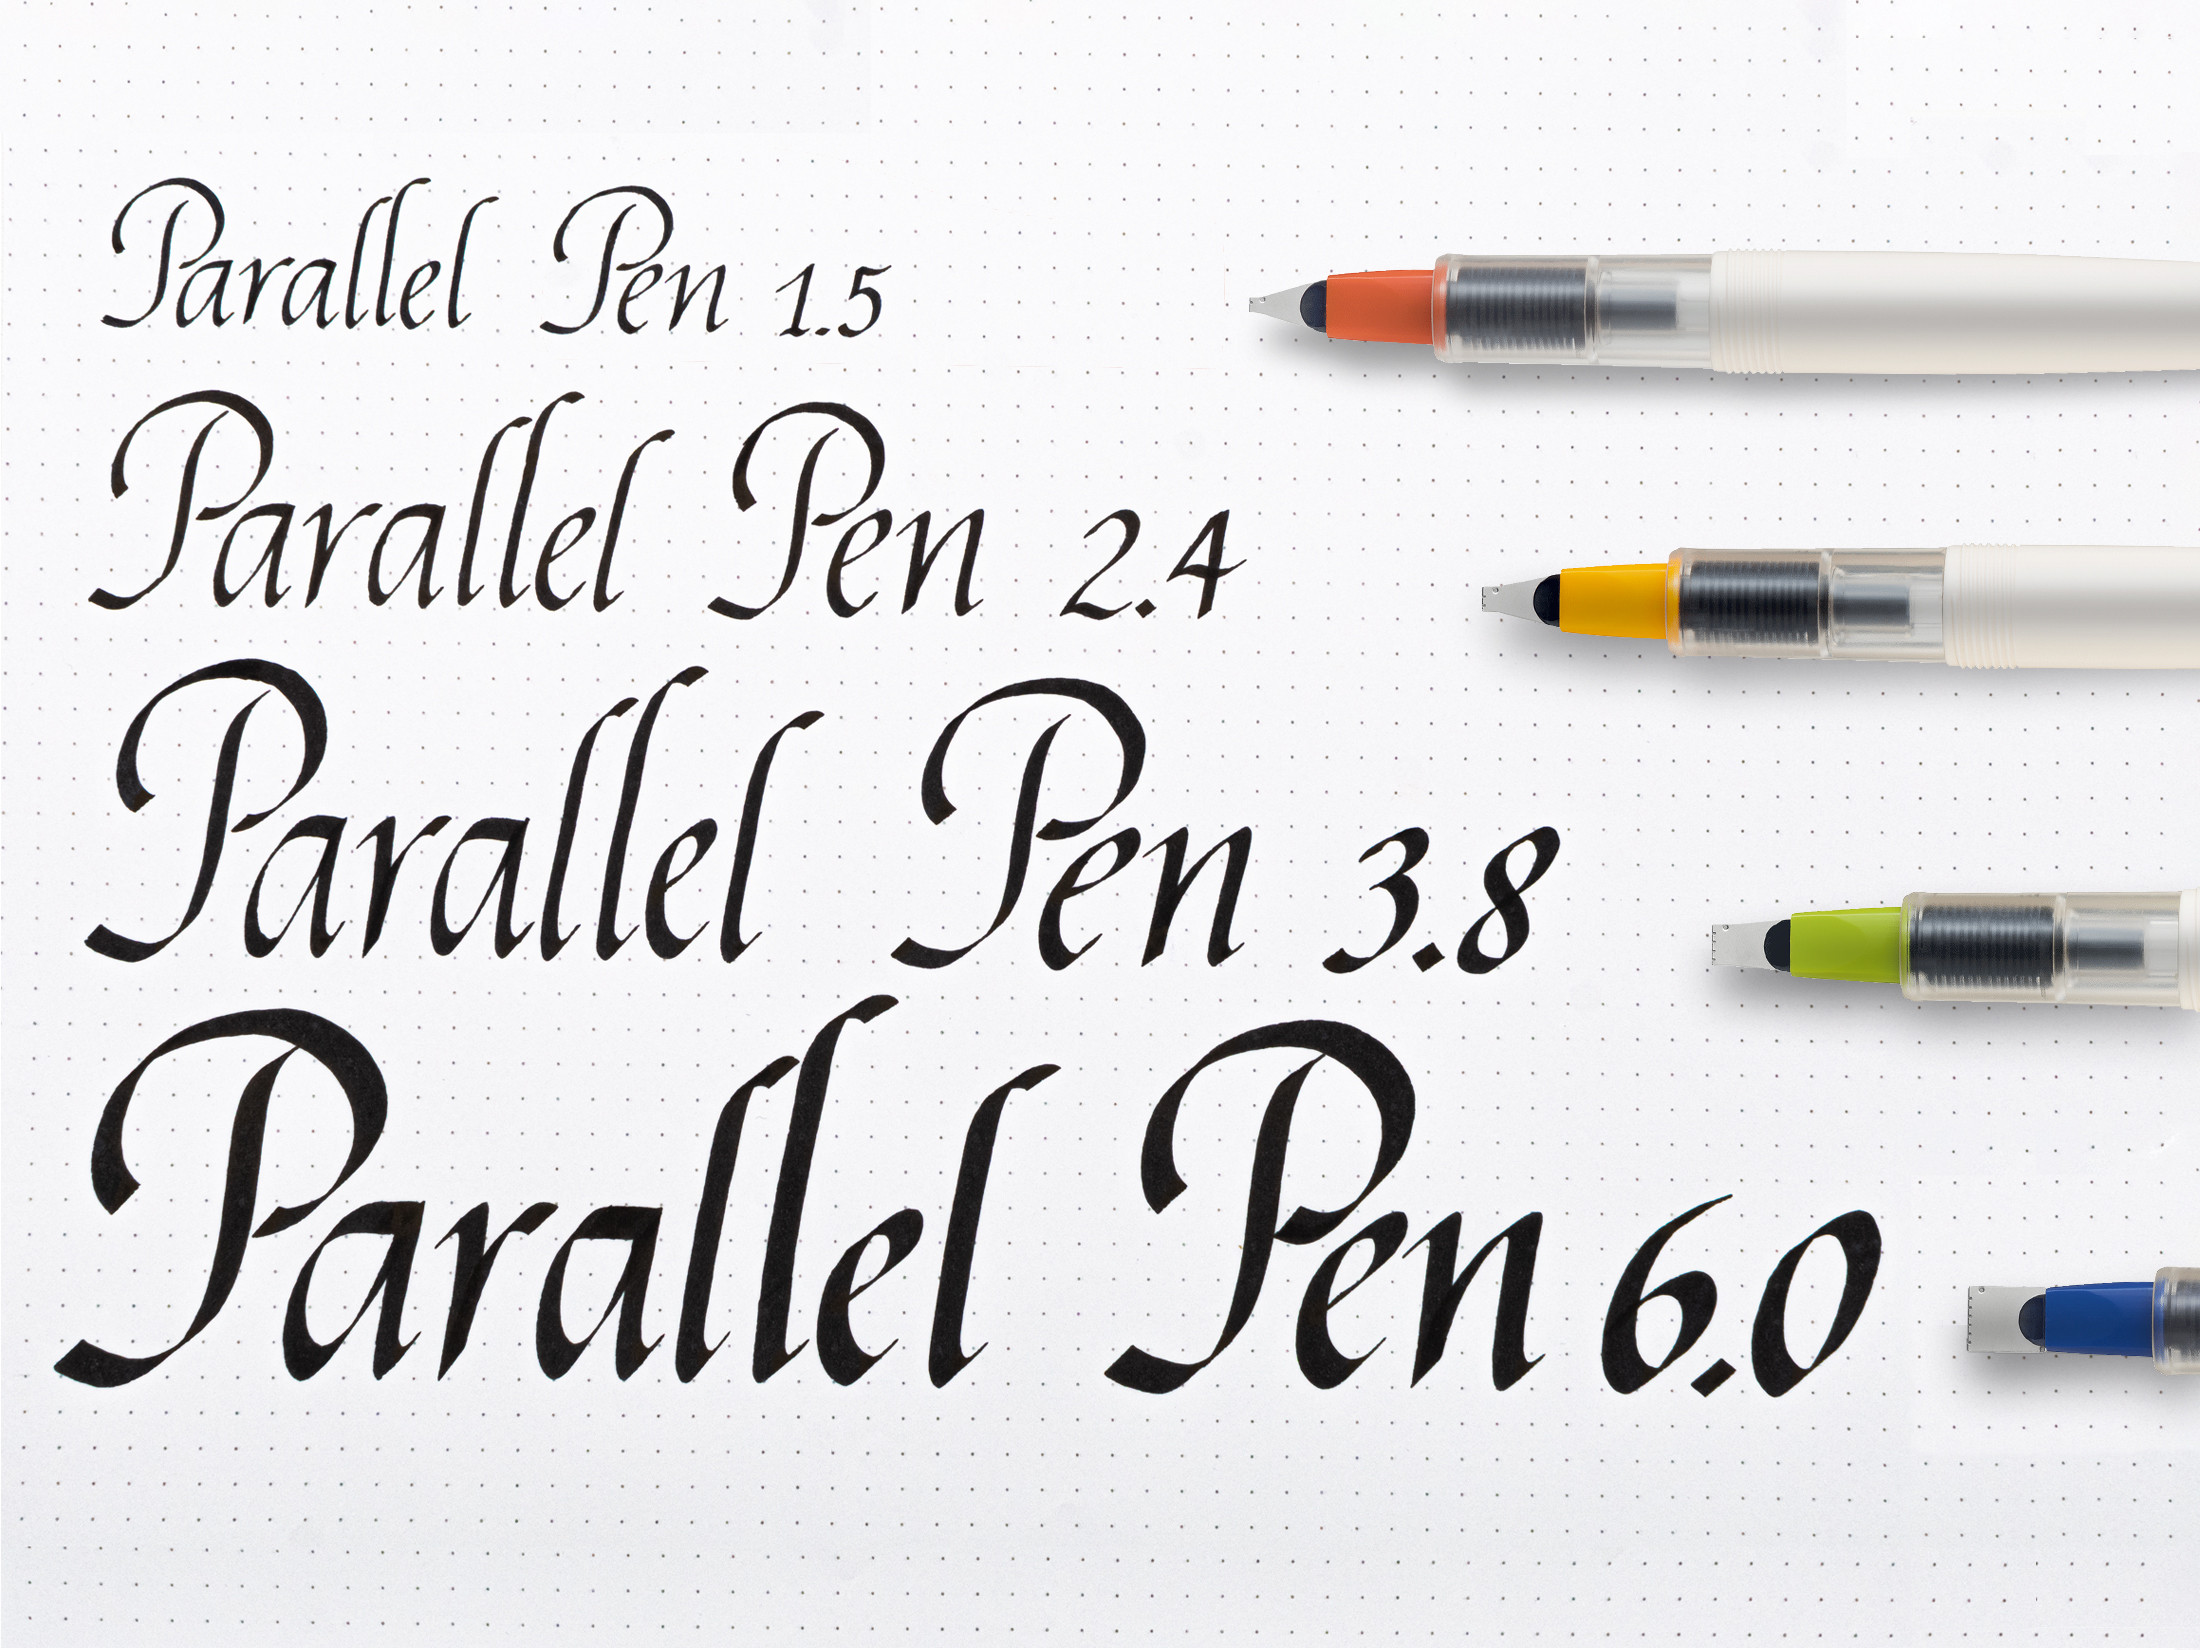 Parallel Pen 3.8